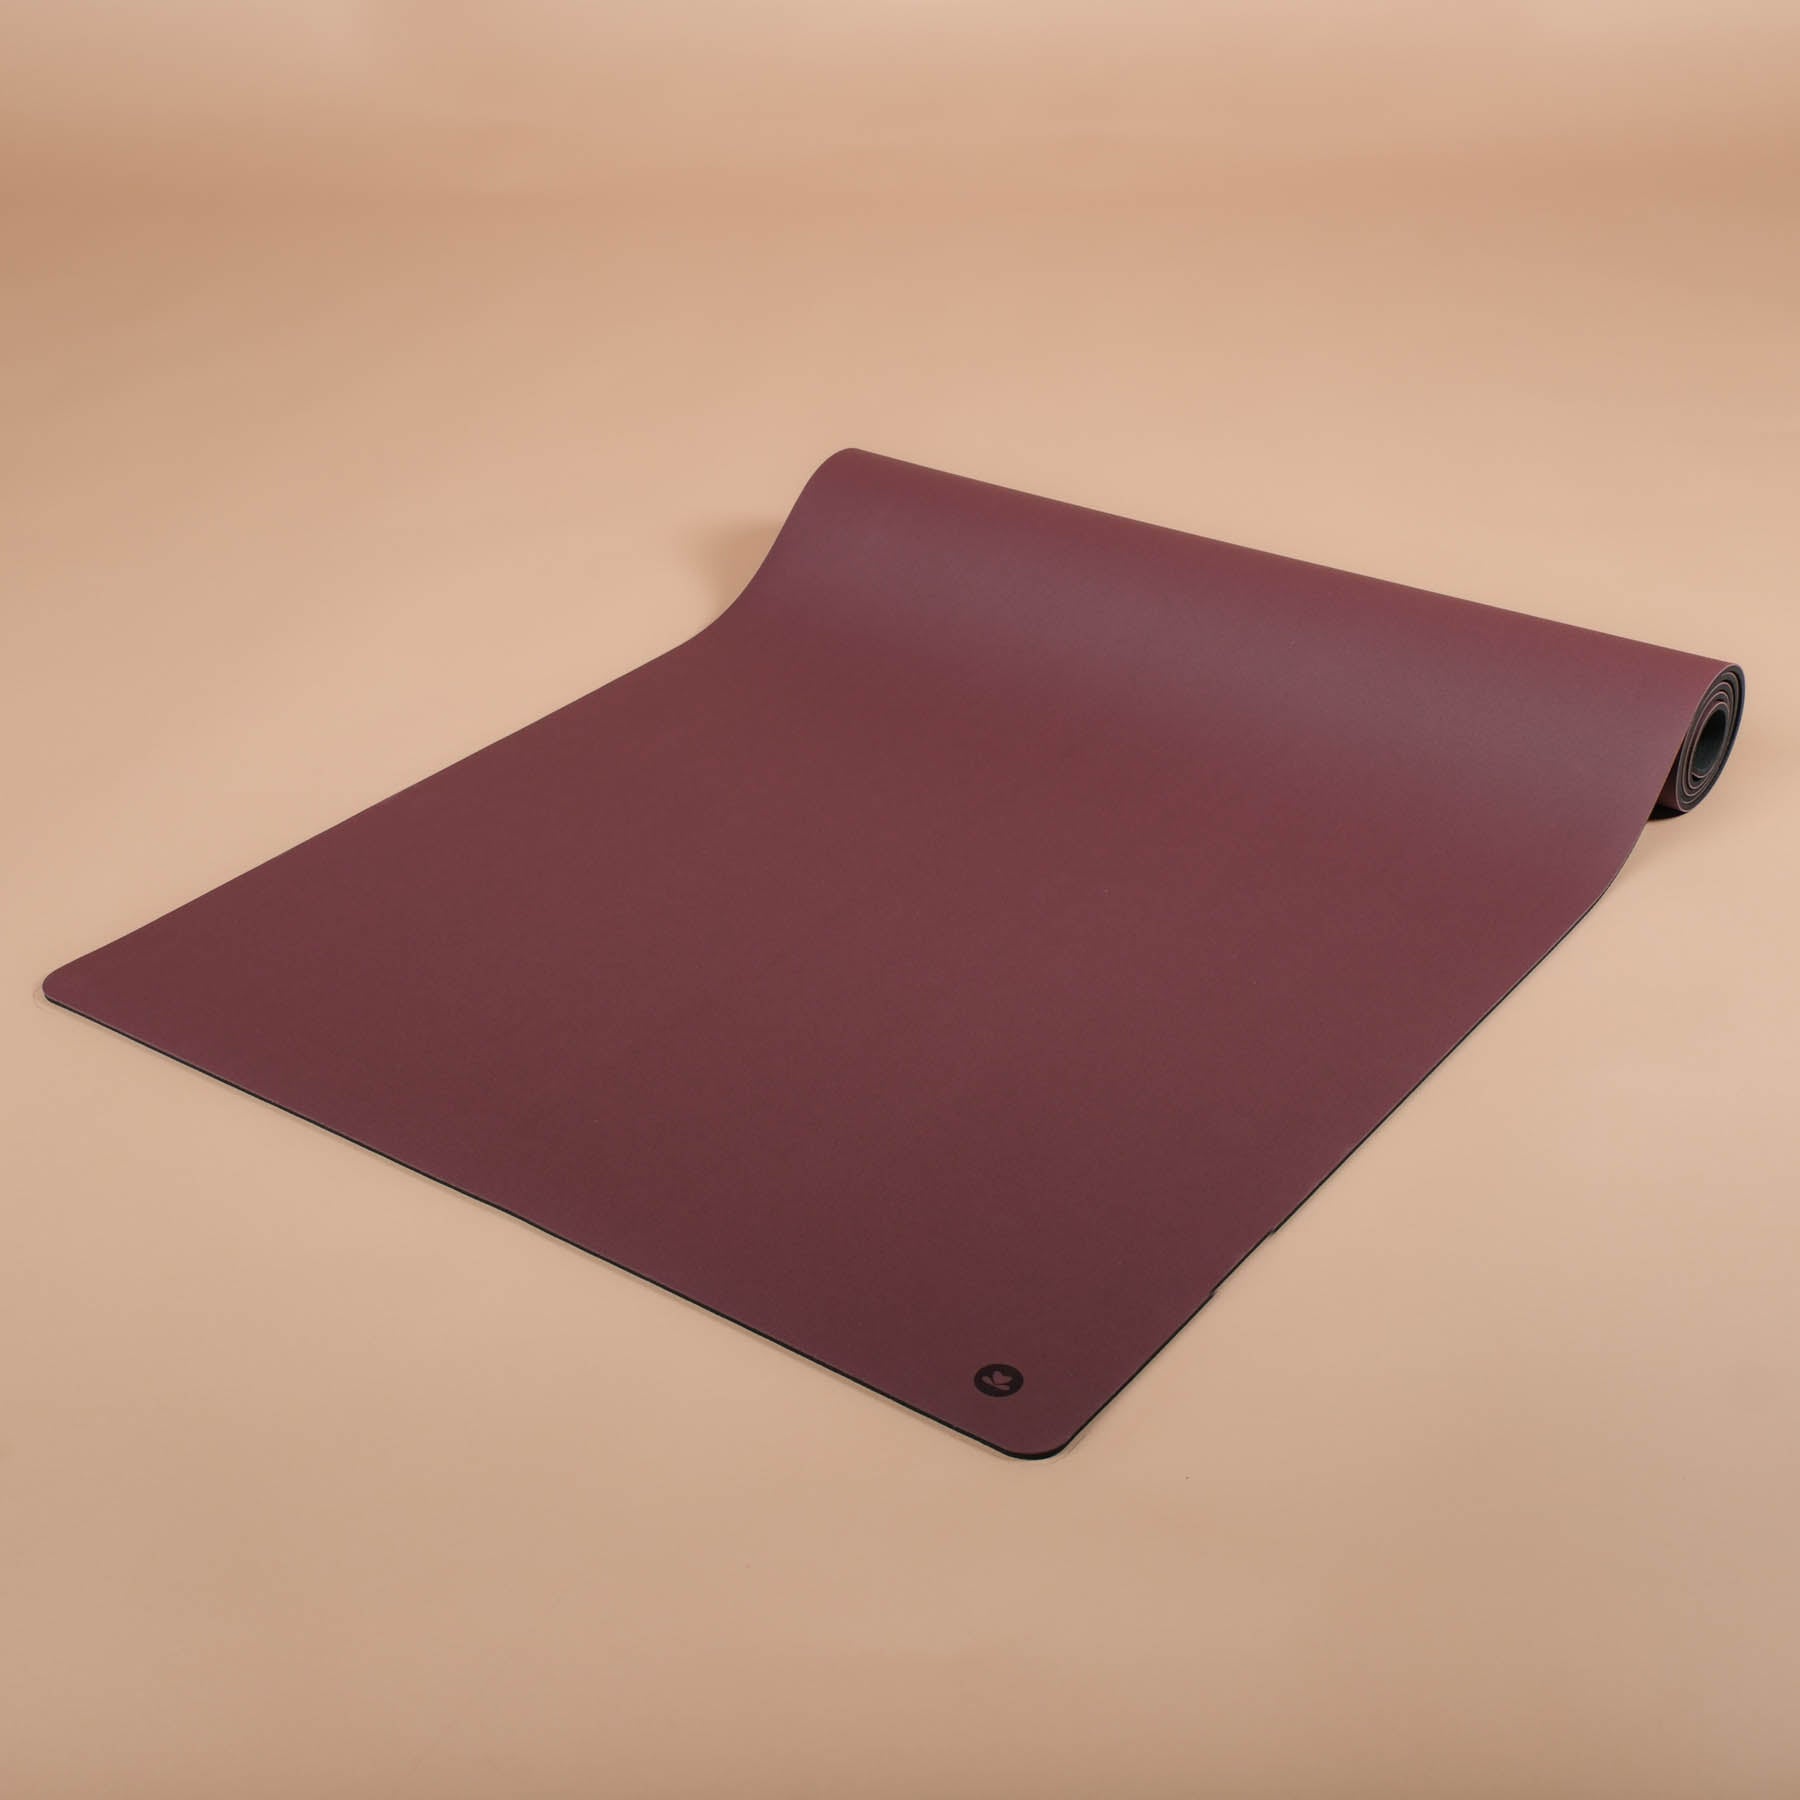 Tapis de yoga SuperGrip très antidérapant en caoutchouc naturel durable dans la couleur berry